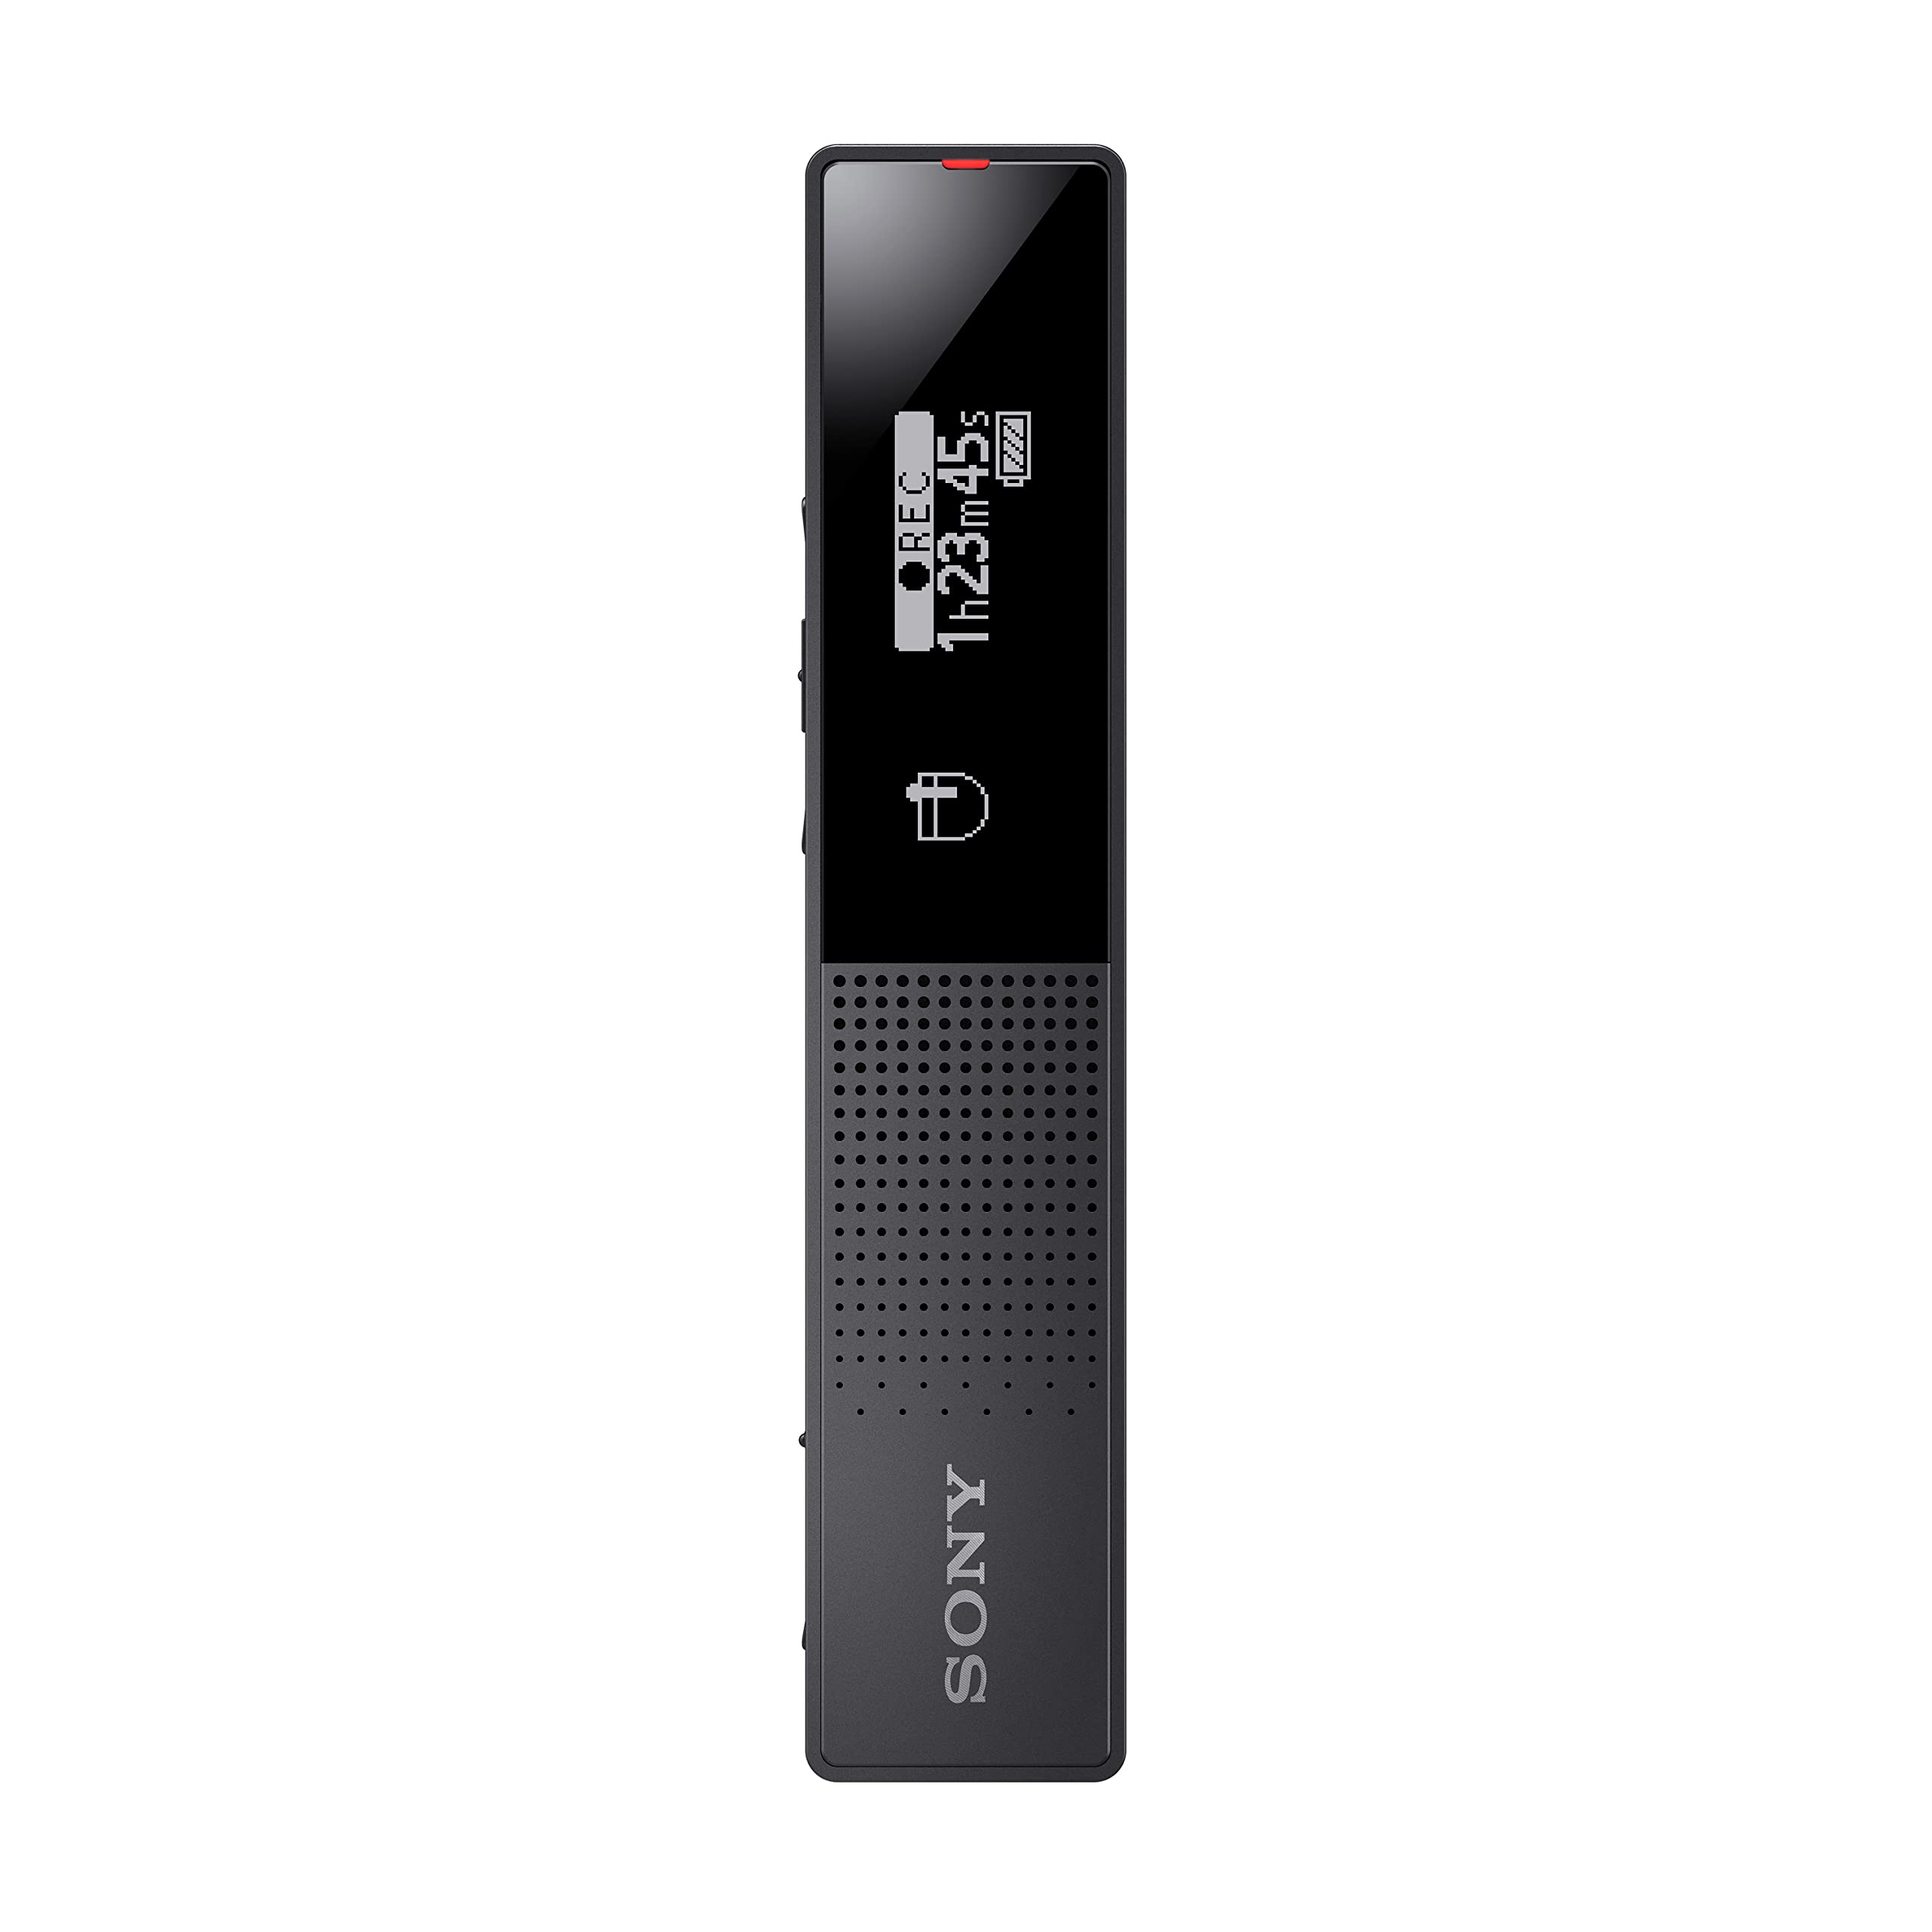 Sony ICD-TX660 - Enregistreur vocal numérique mince avec écran OLED